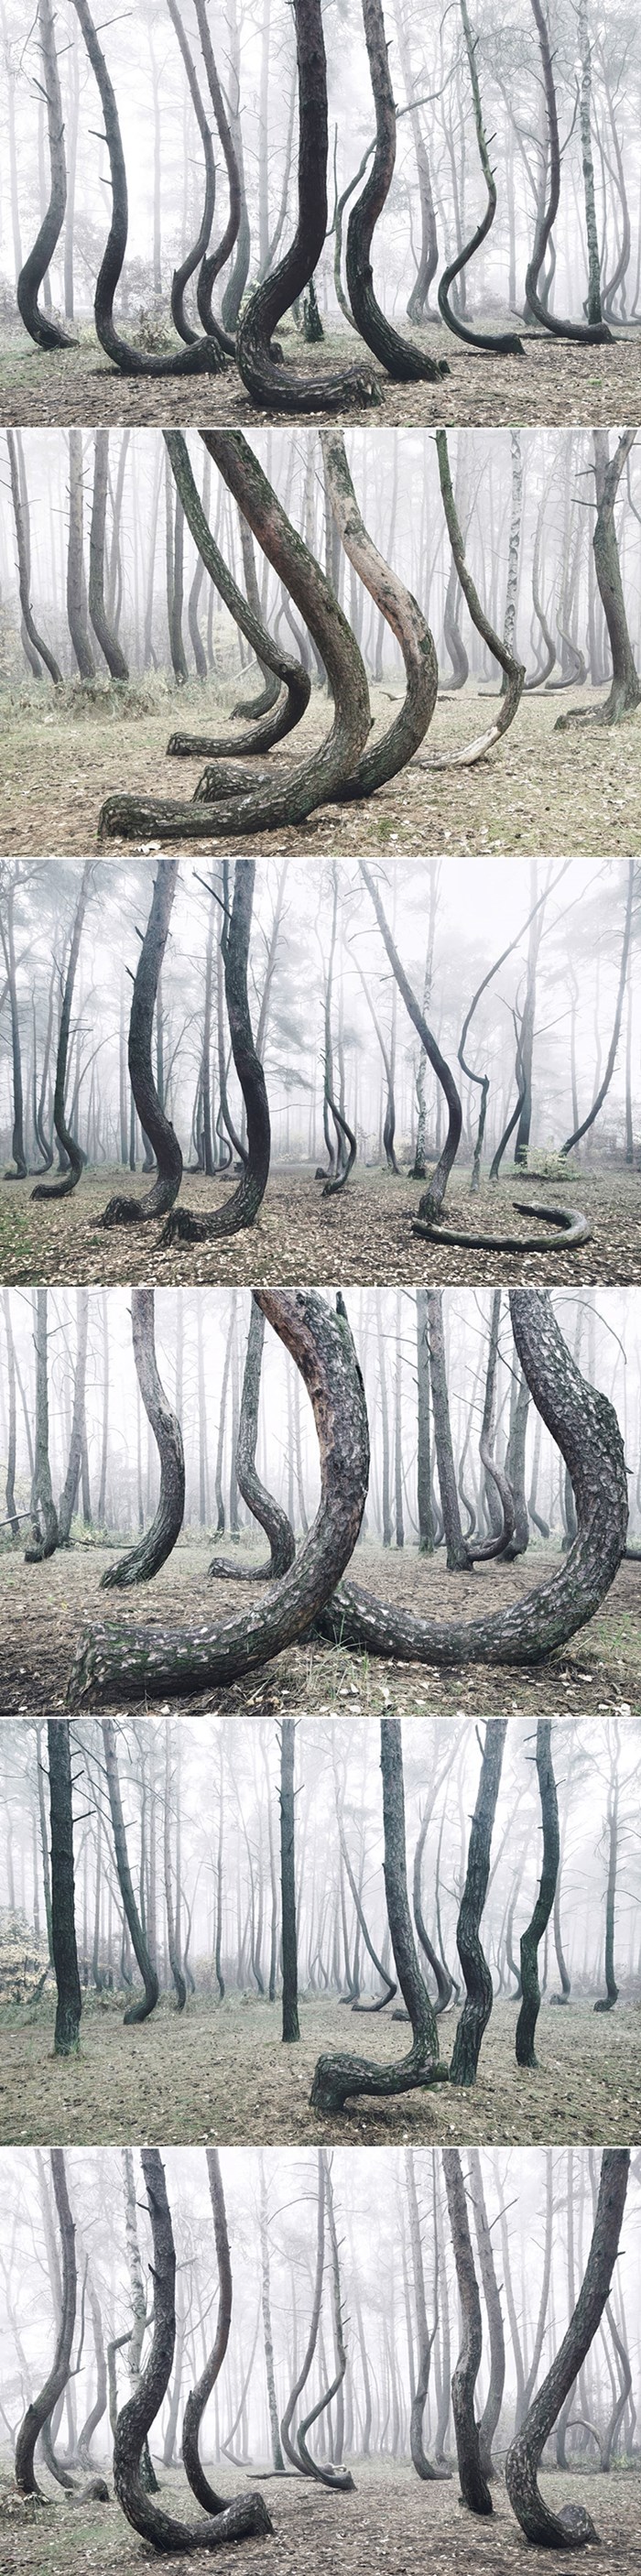 GALERIJA: Tajanstvena šuma od 400 iskrivljenih stabala i dalje je misterij za znanstvenike